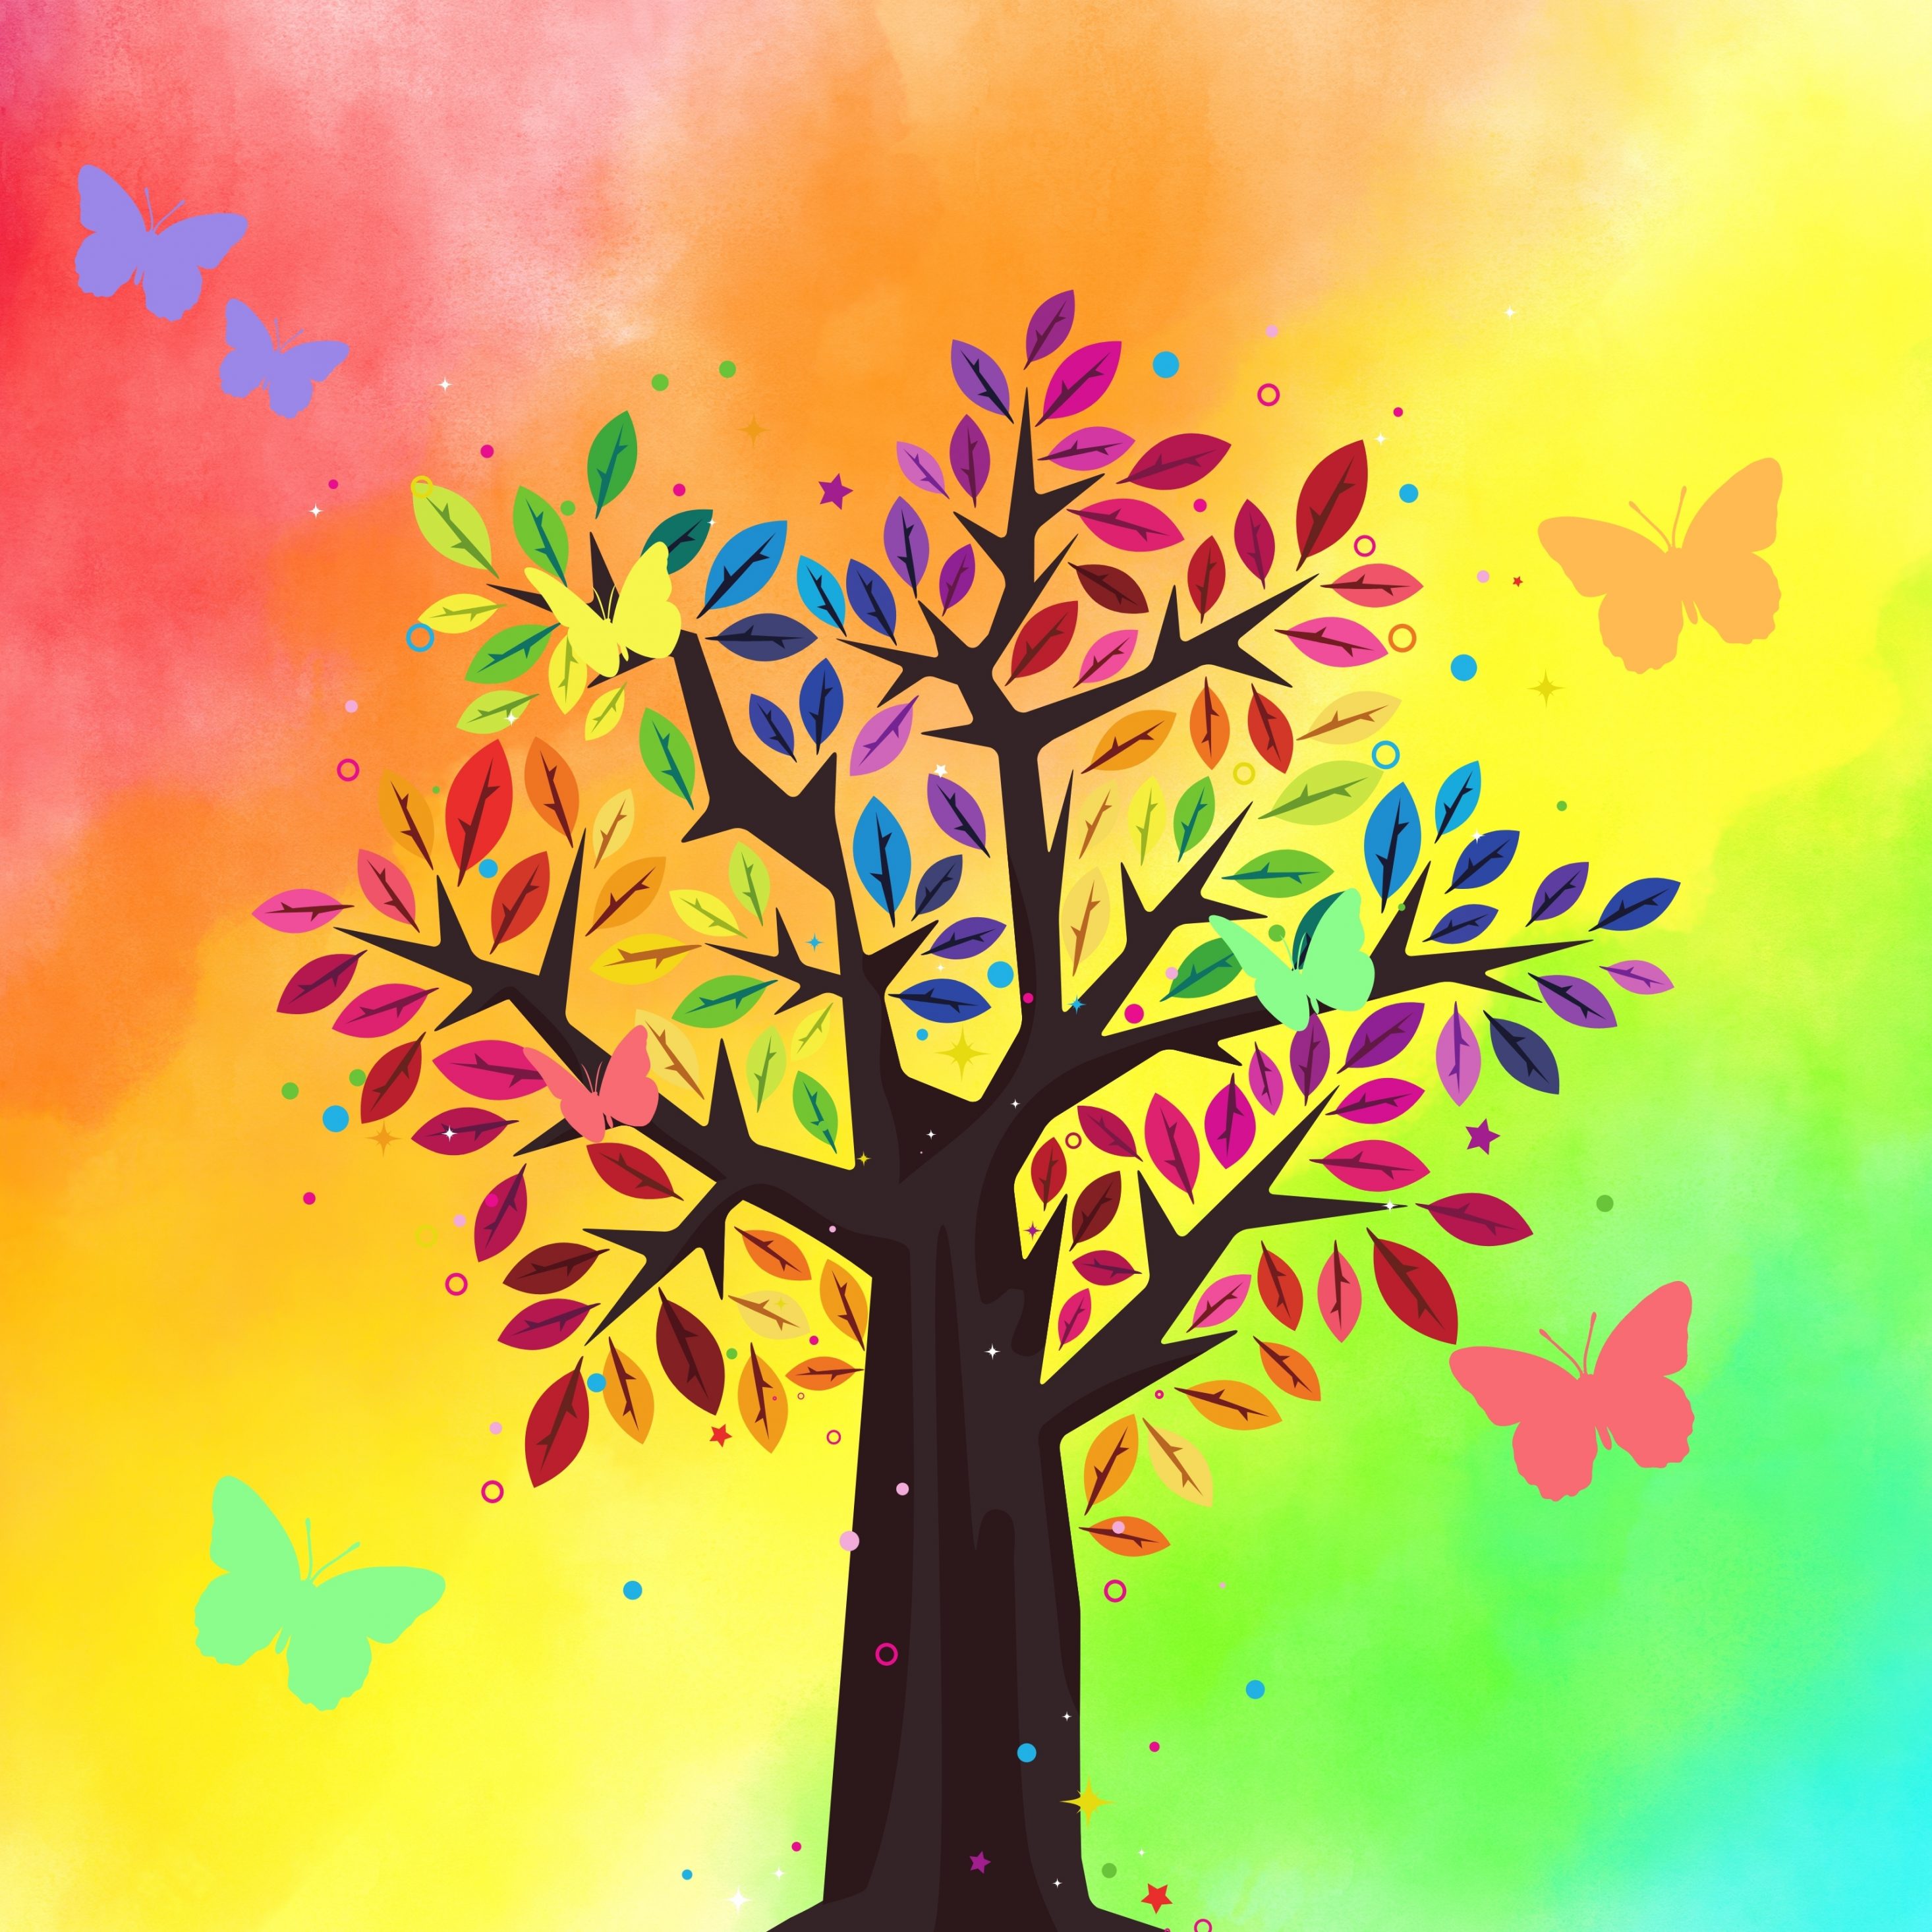 2932x2932 iPad Pro wallpaper 4k Tree Rainbow Colorful Butterfly iPad Wallpaper 2932x2932 pixels resolution